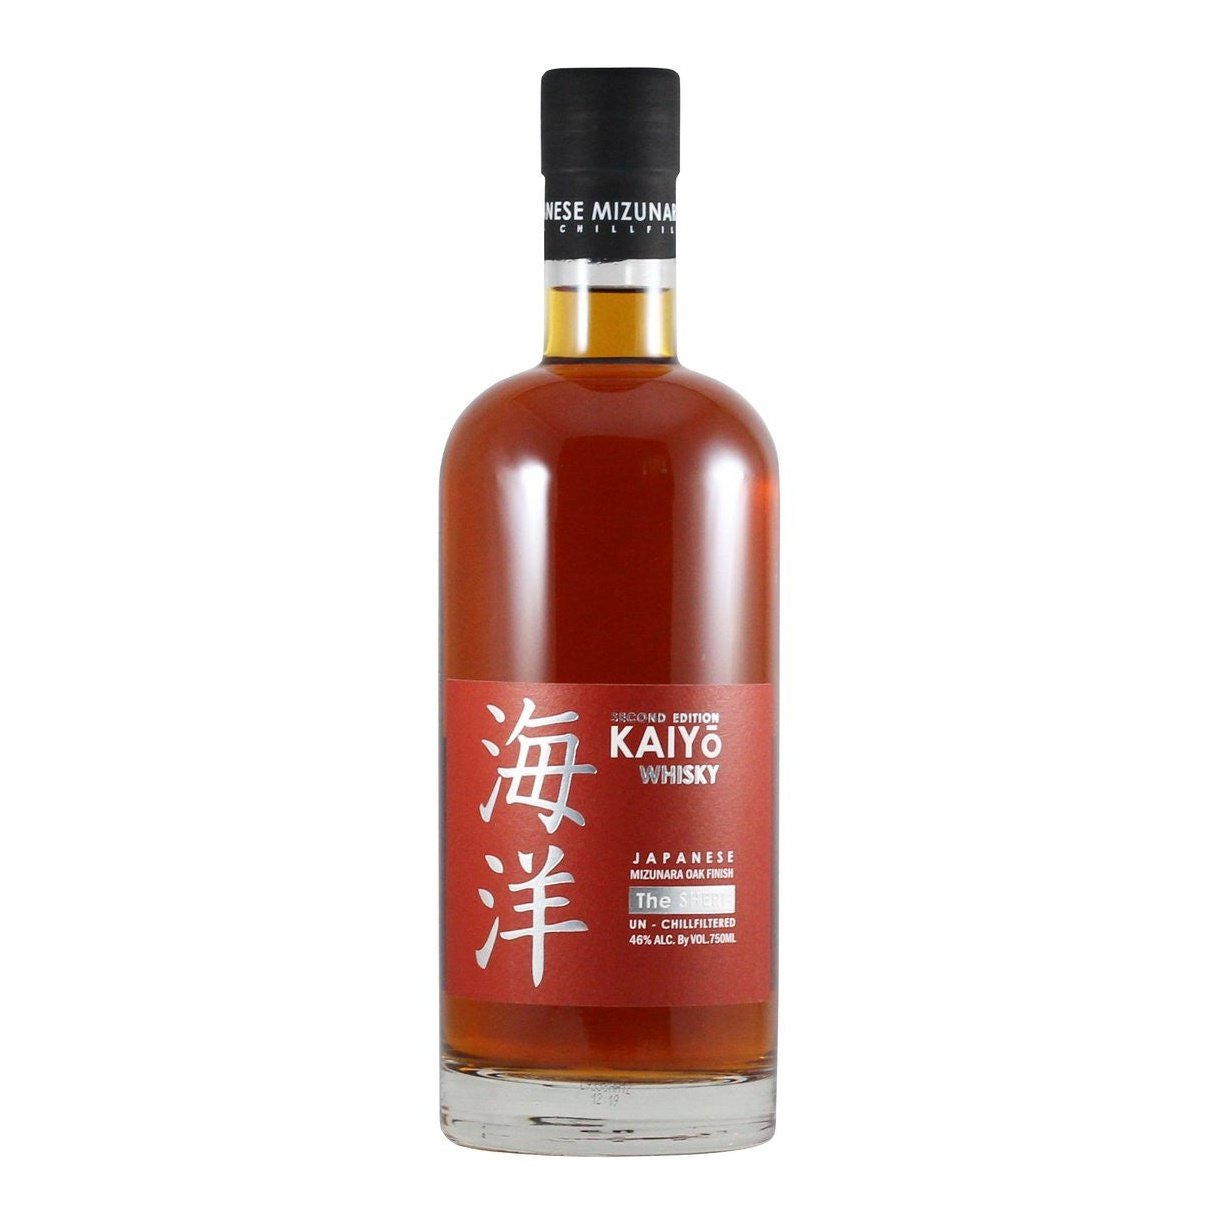 Kaiyo "The Sheri" Mizunara oak Finish Japanese whisky 750ml